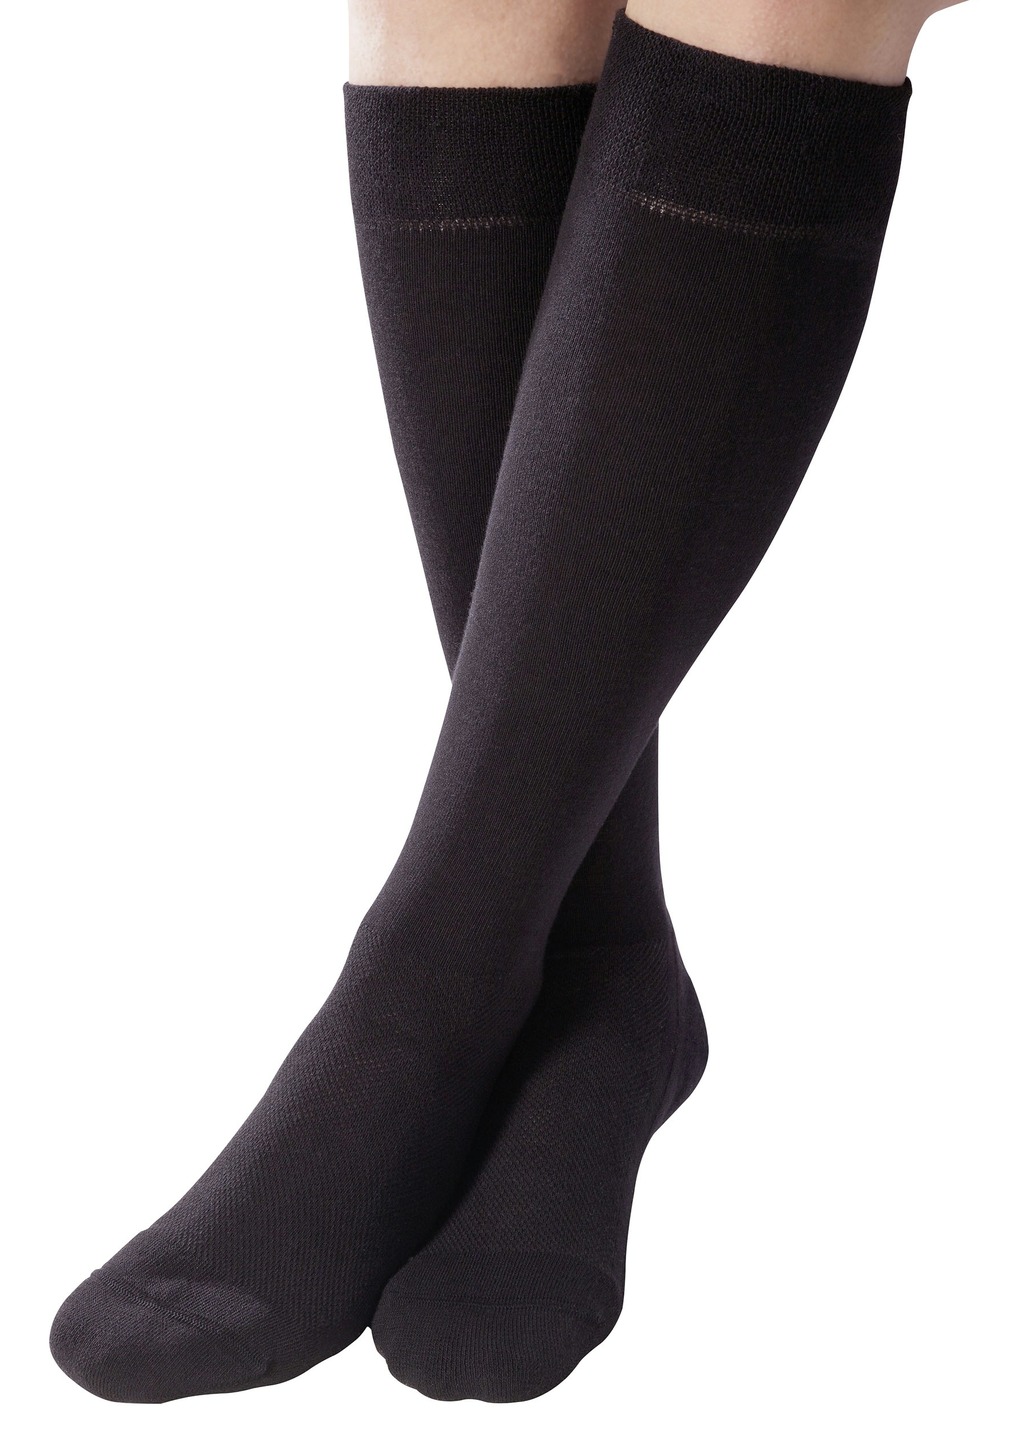 Strümpfe - Zweierpack Komfort-Kniestrümpfe oder -Socken, in Größe 1 (37–39) bis 3 (43–45), in Farbe SCHWARZ, in Ausführung Zweierpack Komfort-Socken Ansicht 1